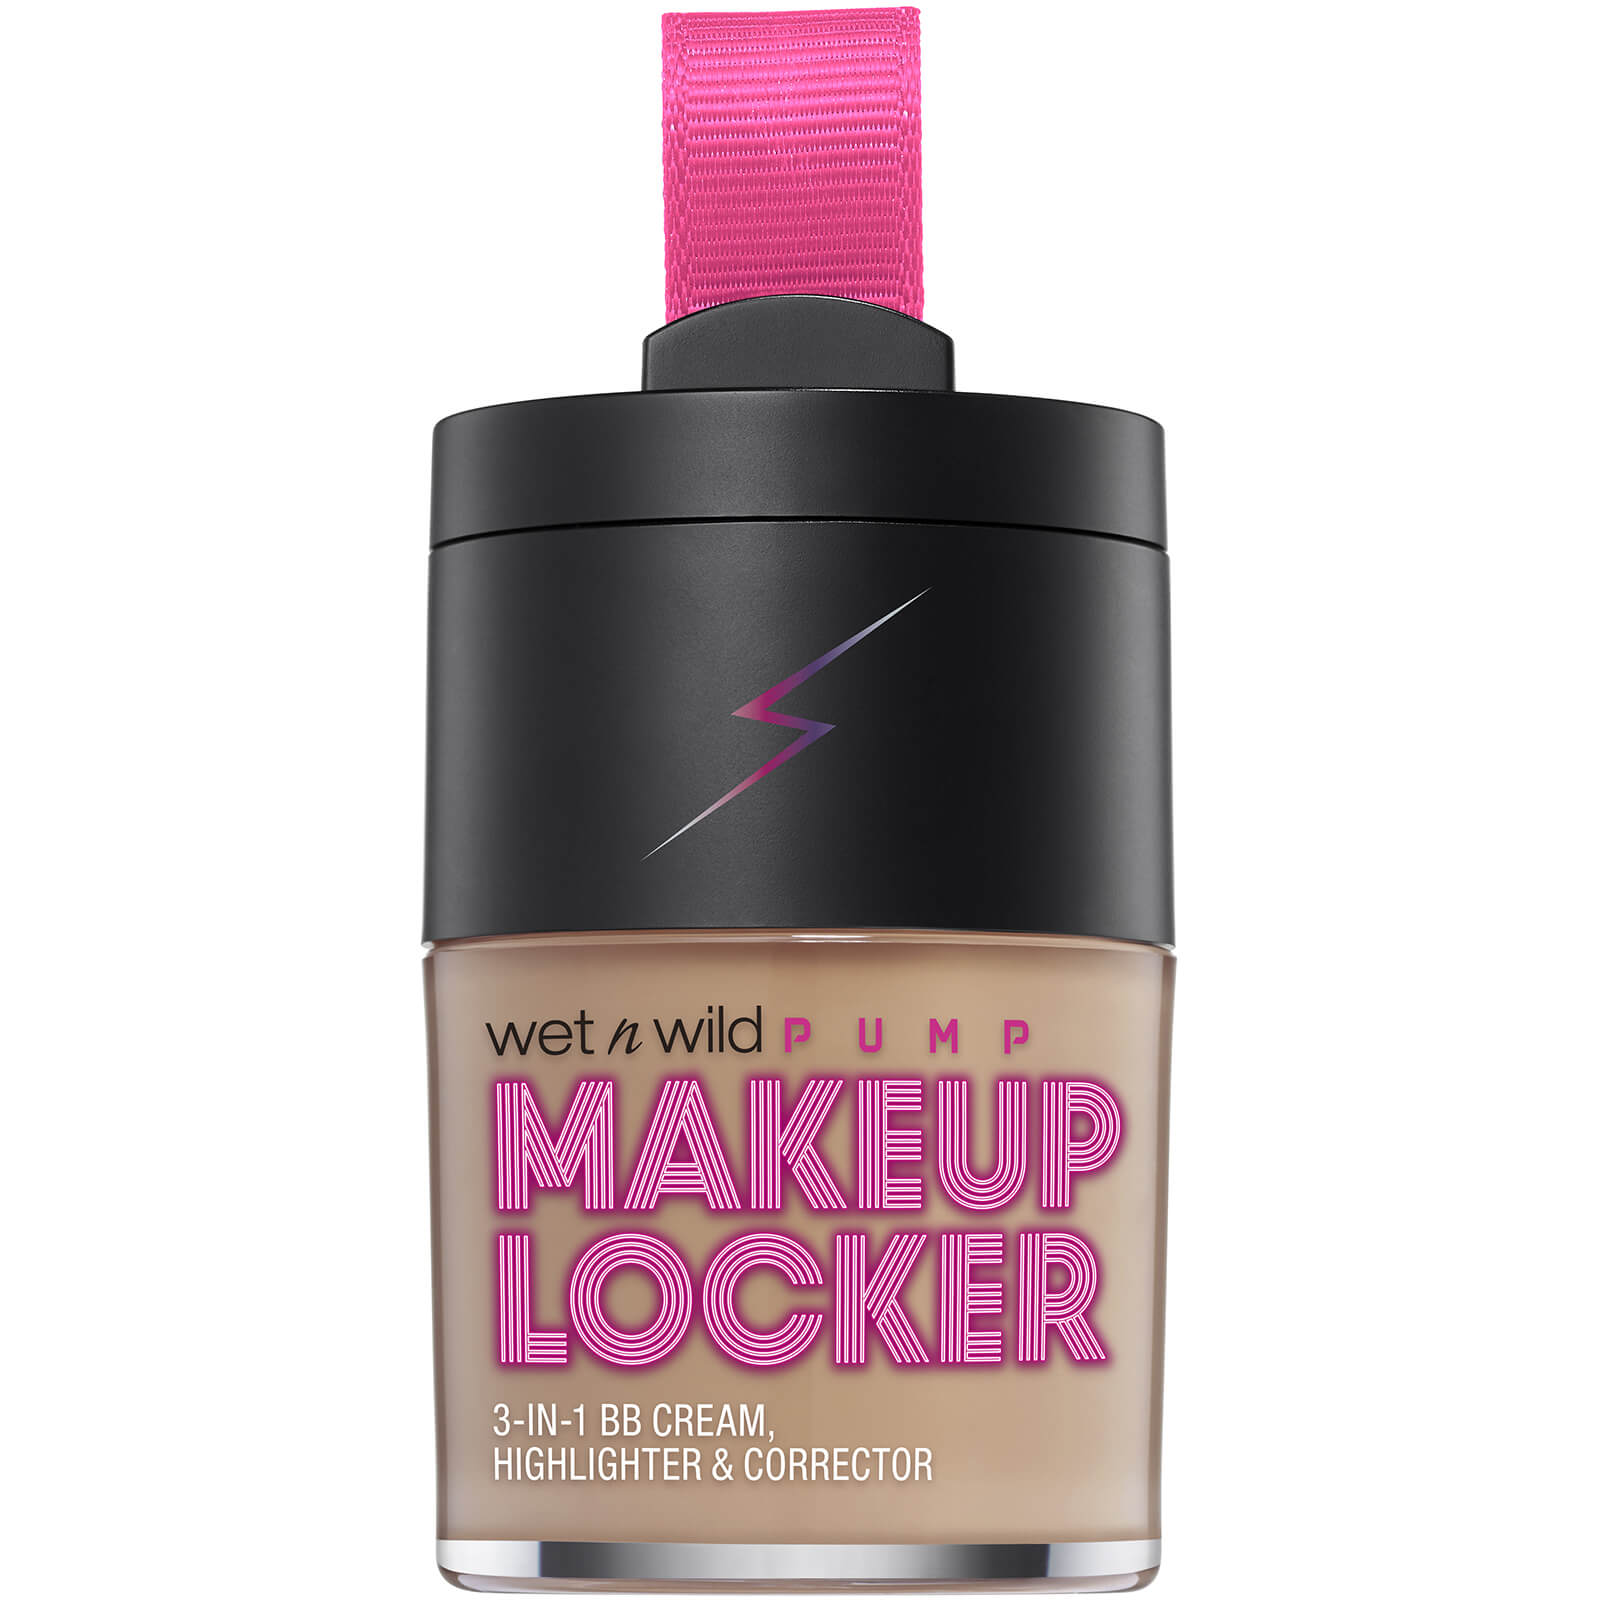 wet n wild Intl Pump Line PPK Makeup Locker 3-in-1 BB Cream (Various Shades) - Light/Medium